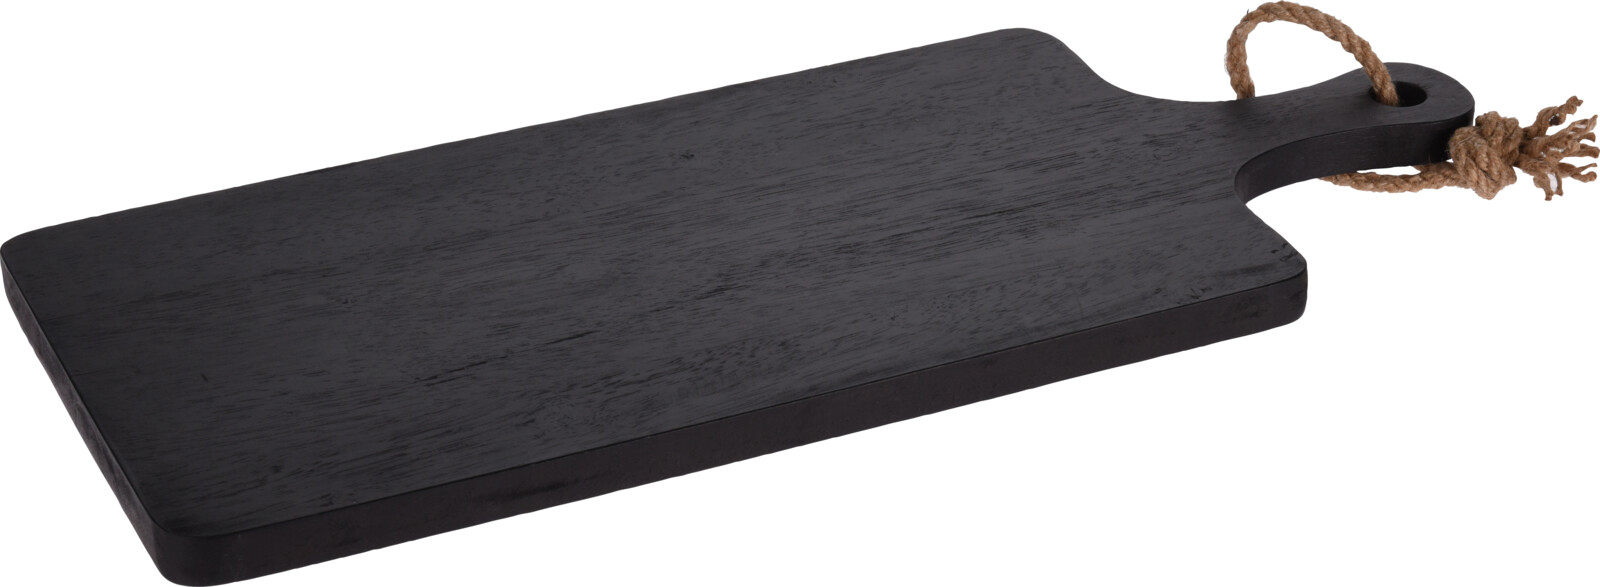 Snijplank rubberwood zwart 50x15x2cm